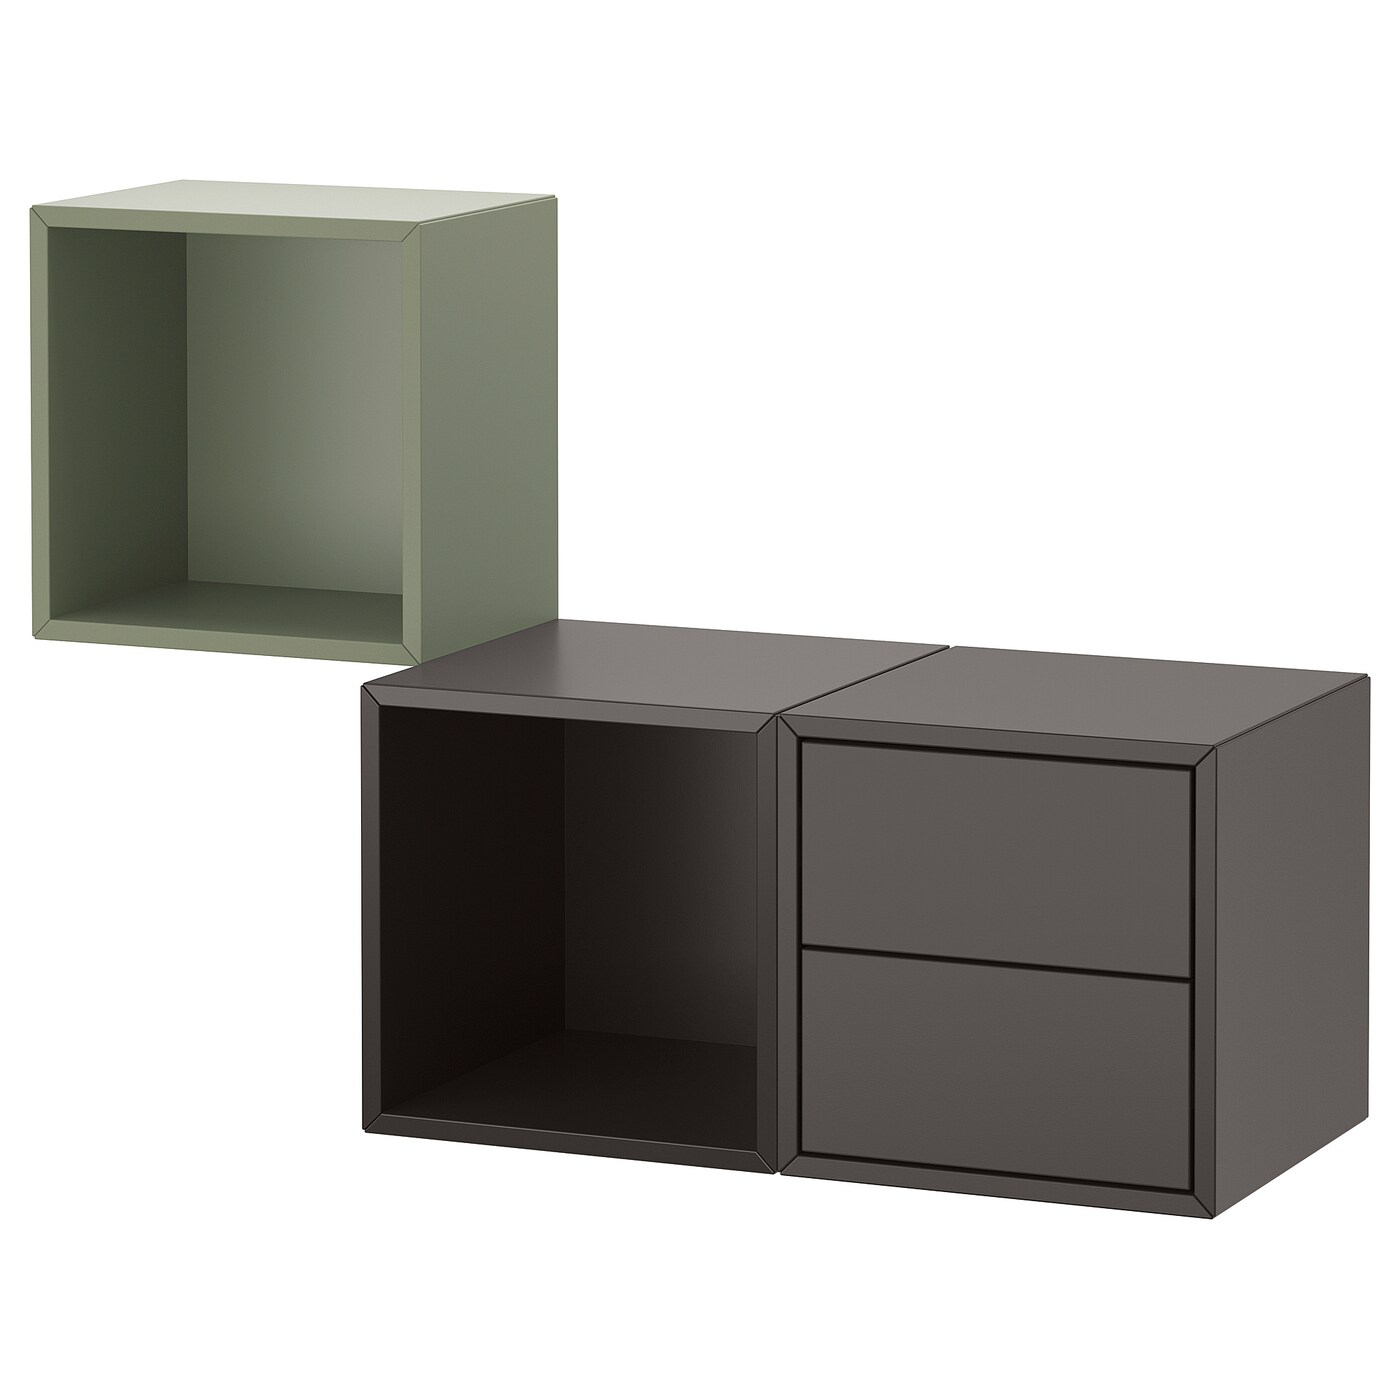 Комбинация для хранения - EKET IKEA/ ЭКЕТ ИКЕА,  105х70 см,   зеленый/темно-серый